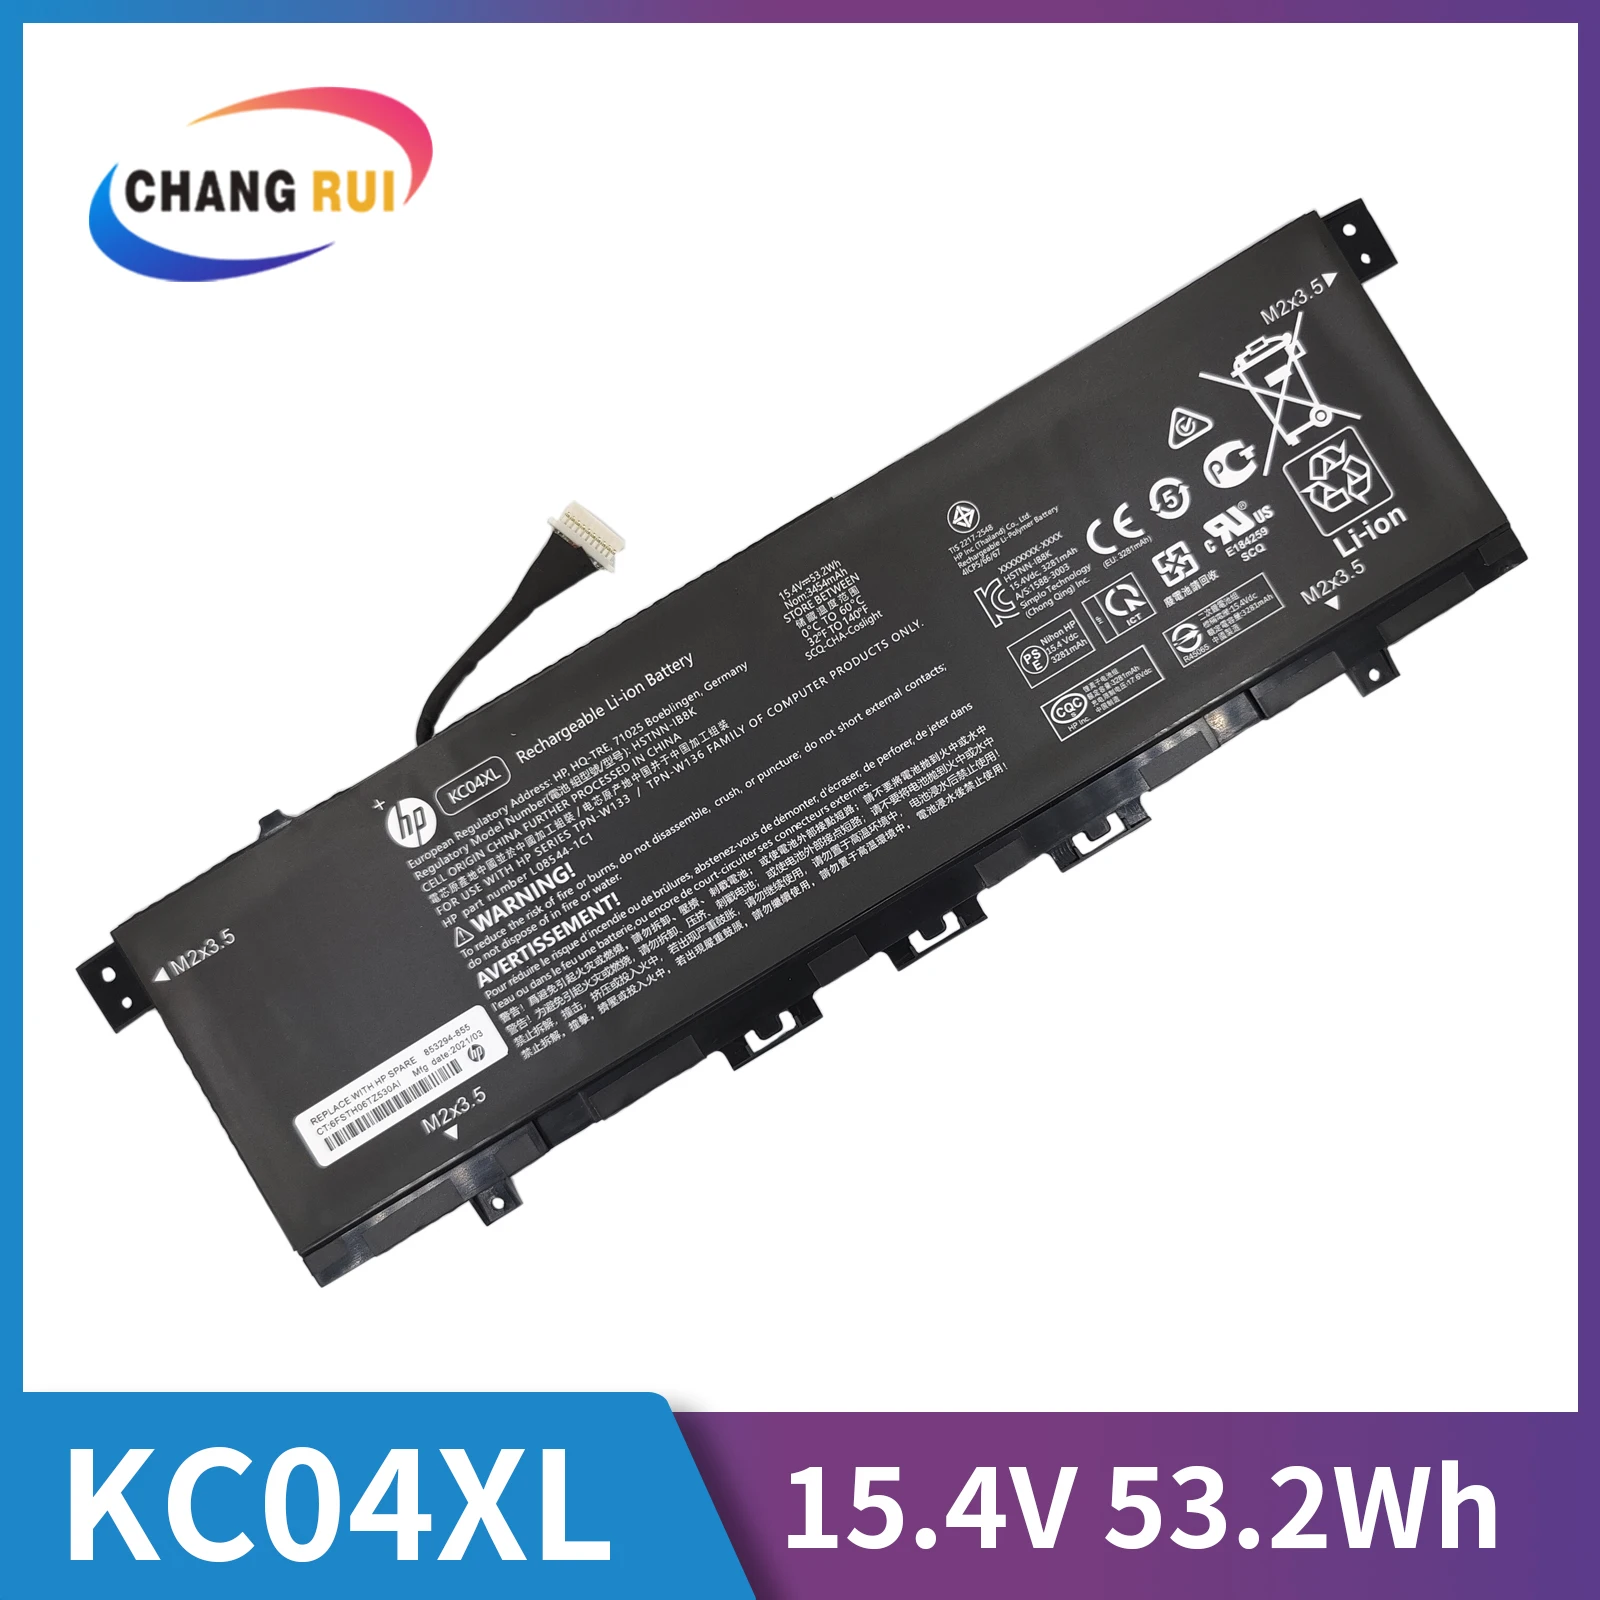 

53.2Wh Type KC04XL 15.4V Laptop Battery for HP ENVY 13-ah 13-ah0029tu 13-aq 13-aq1059tu 13t-ah 13t-aq